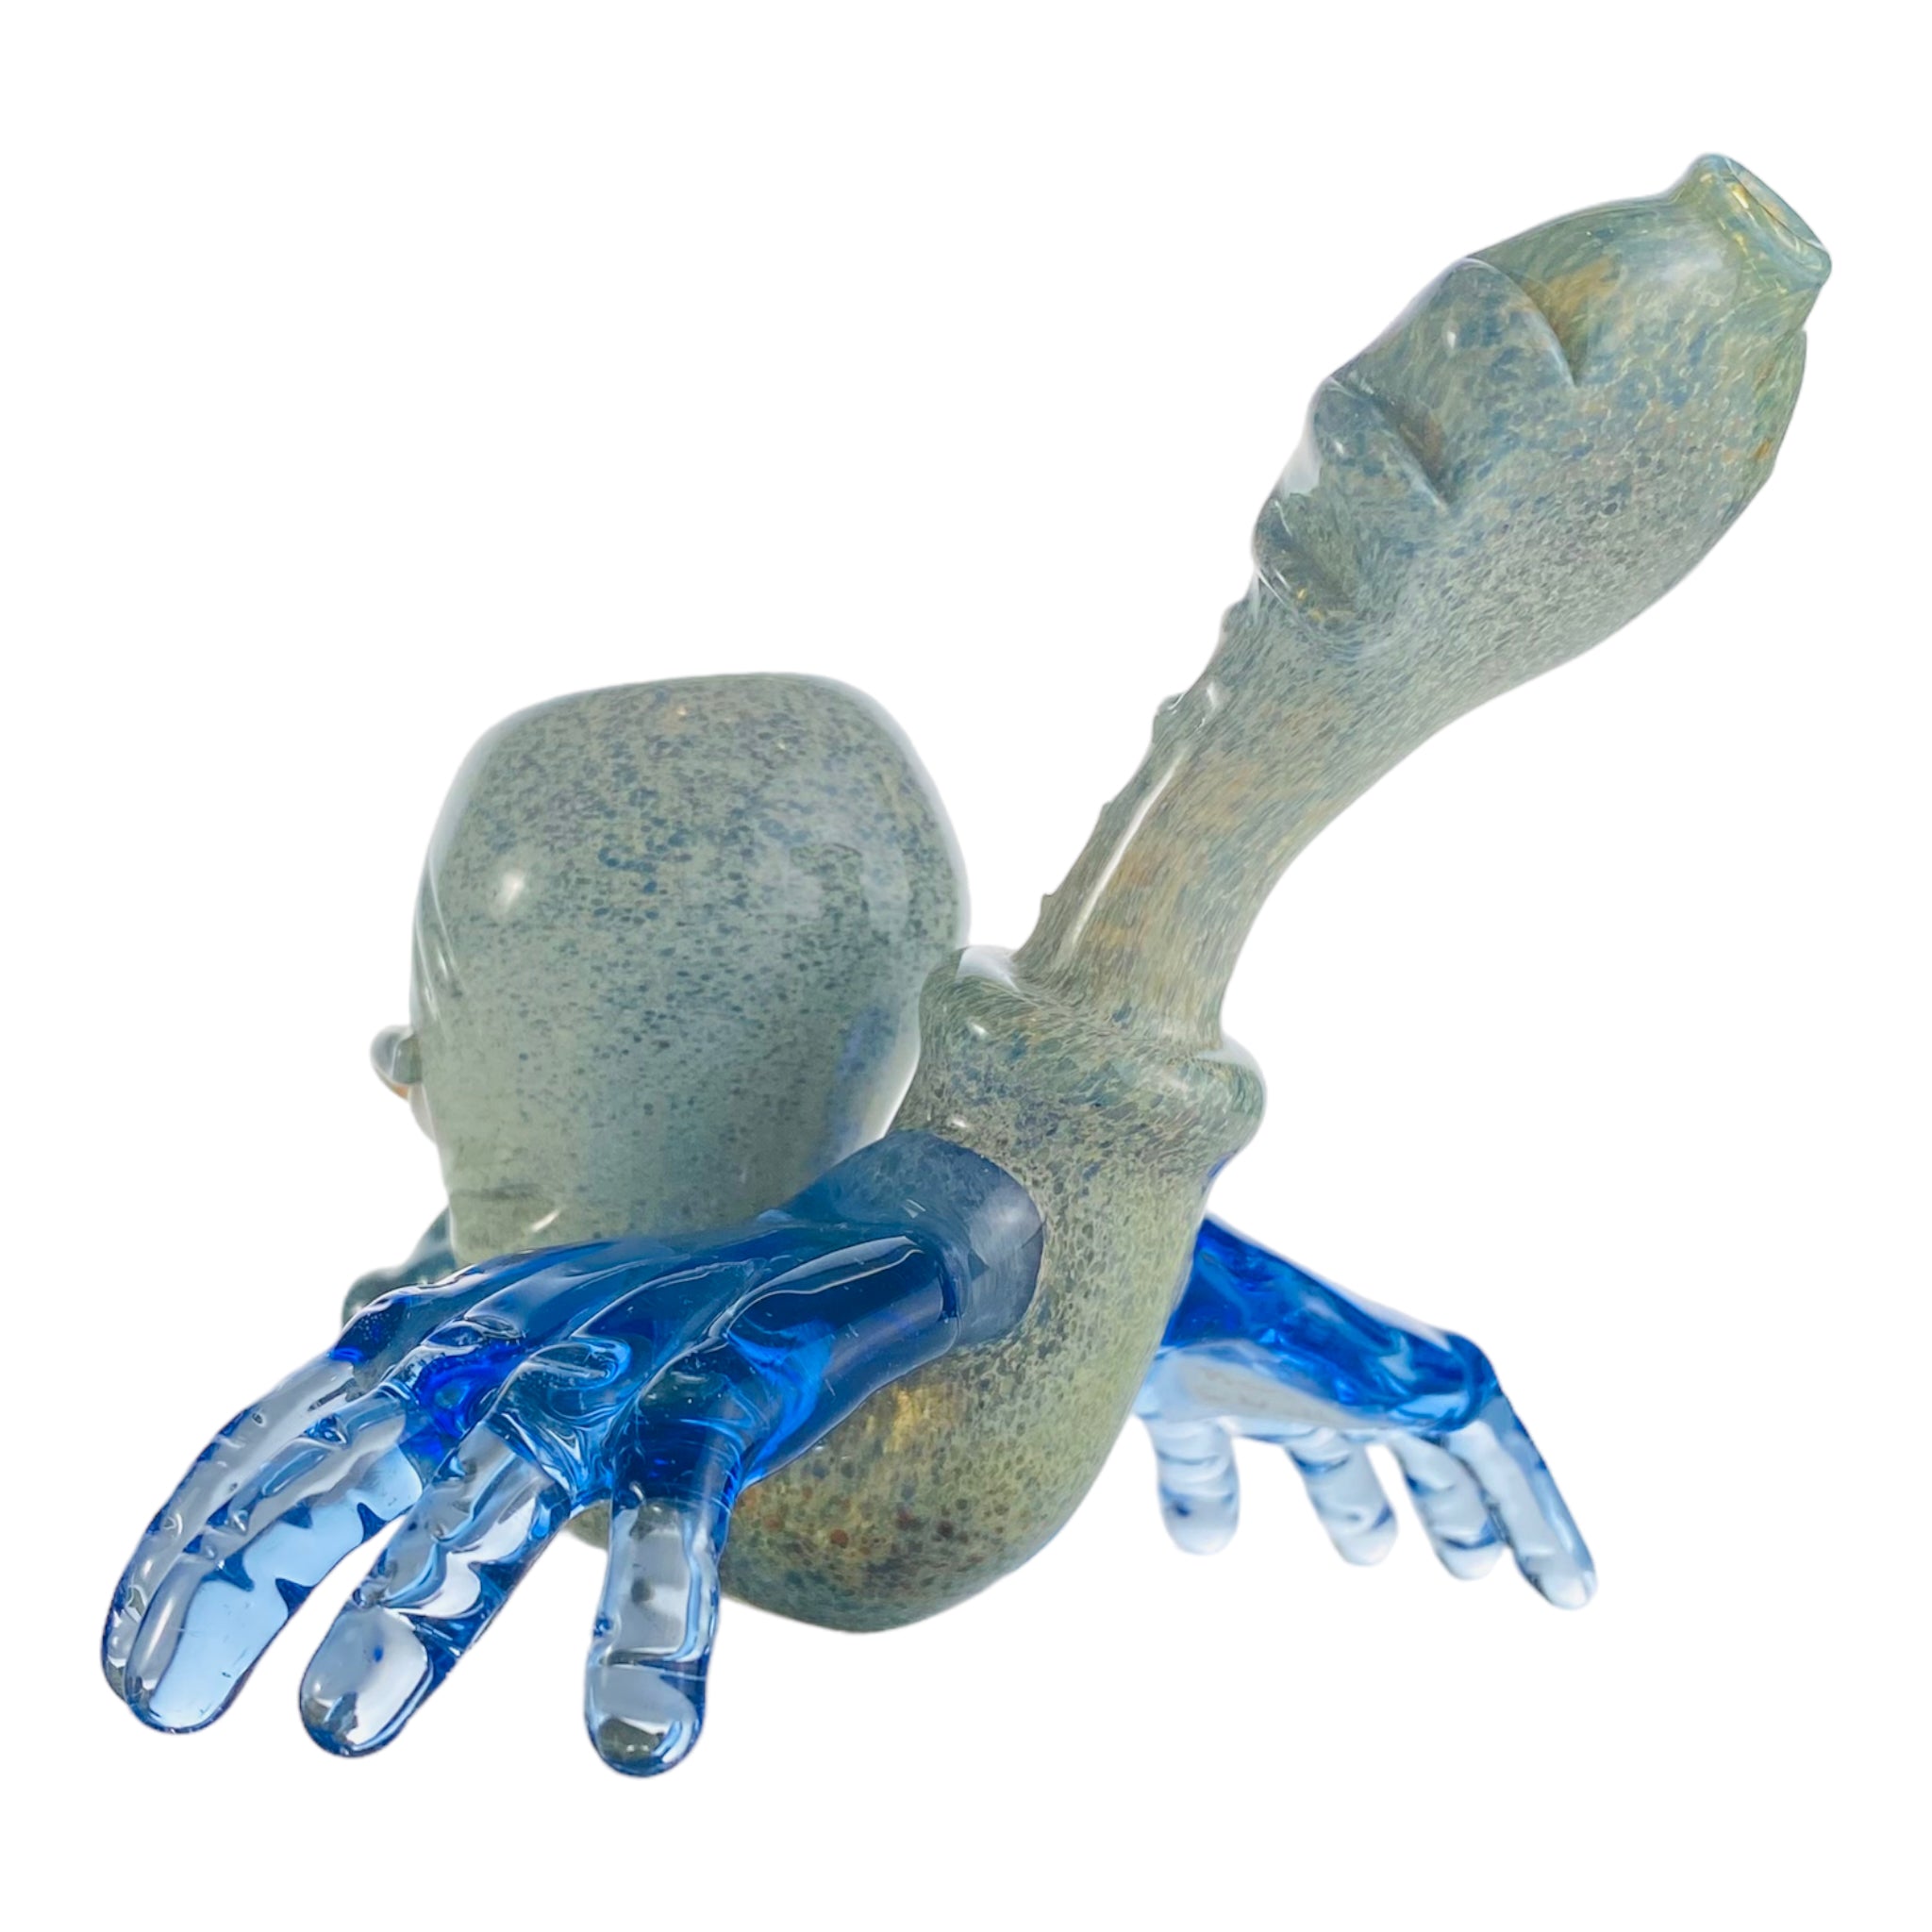 Ben O'Neil Glass - Sculpted Face Glass Sherlock With Blue Hands